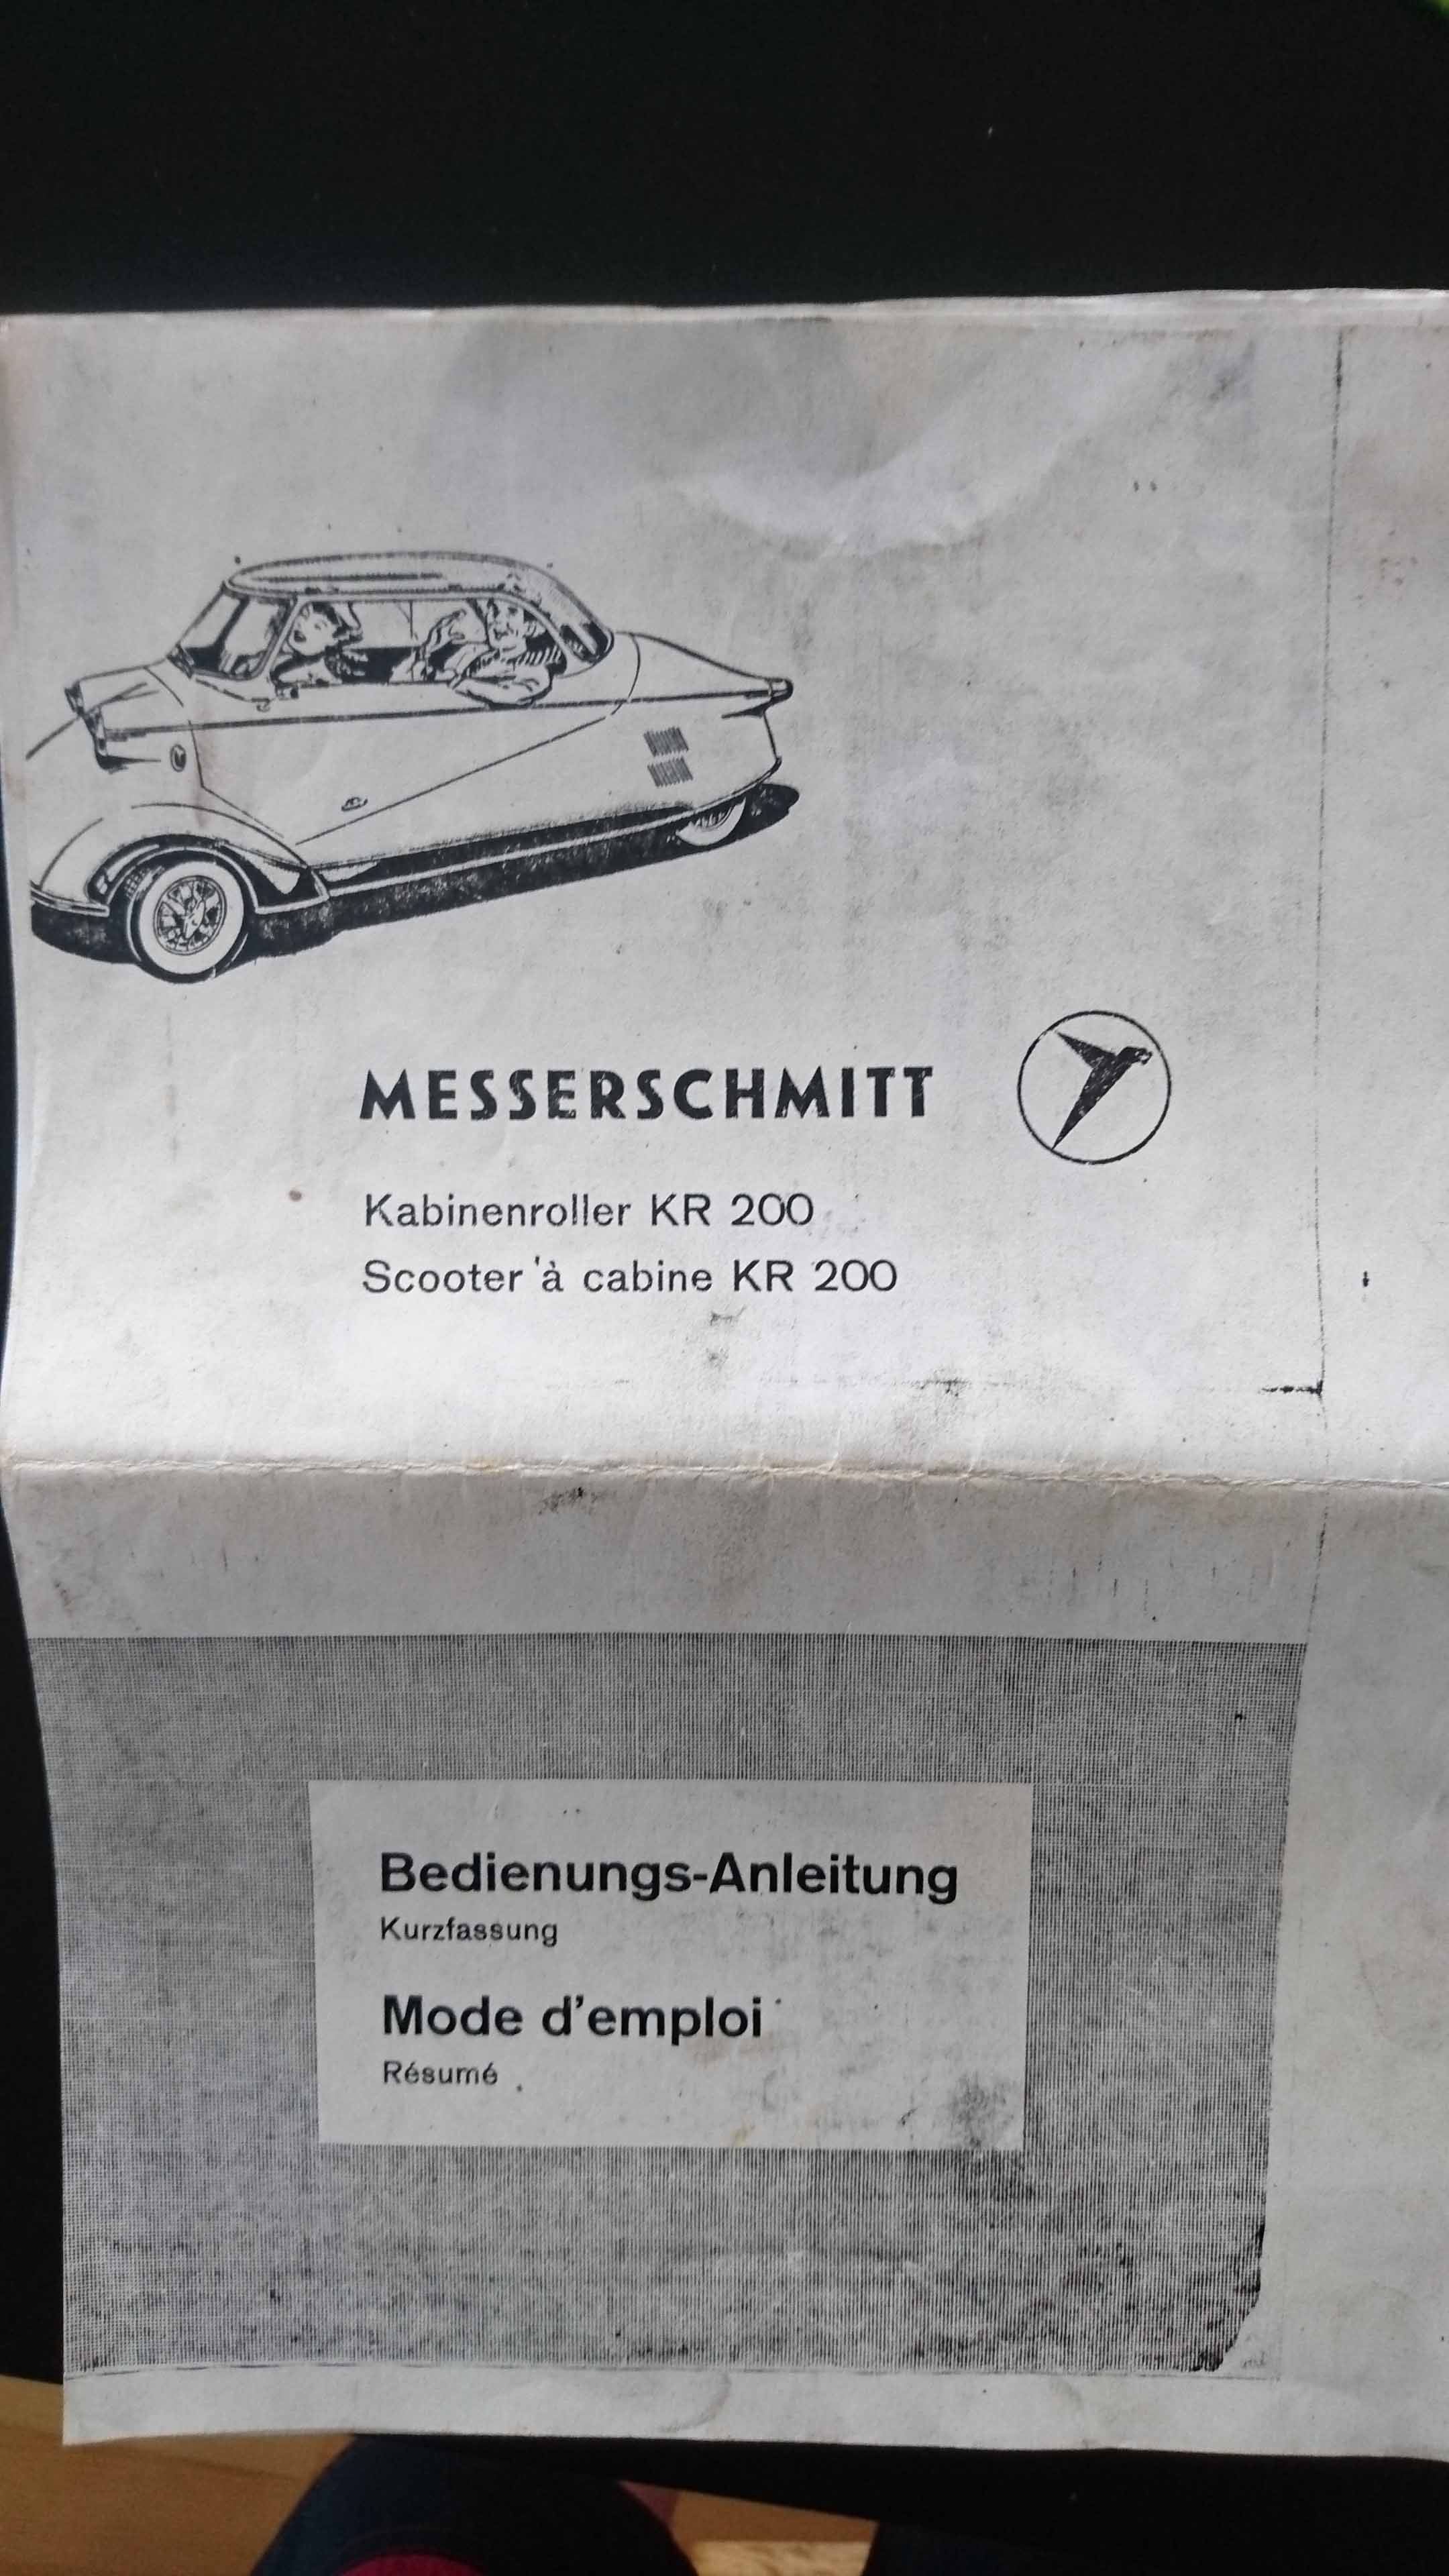 Messerschmitt Betriebsanleitung.jpg